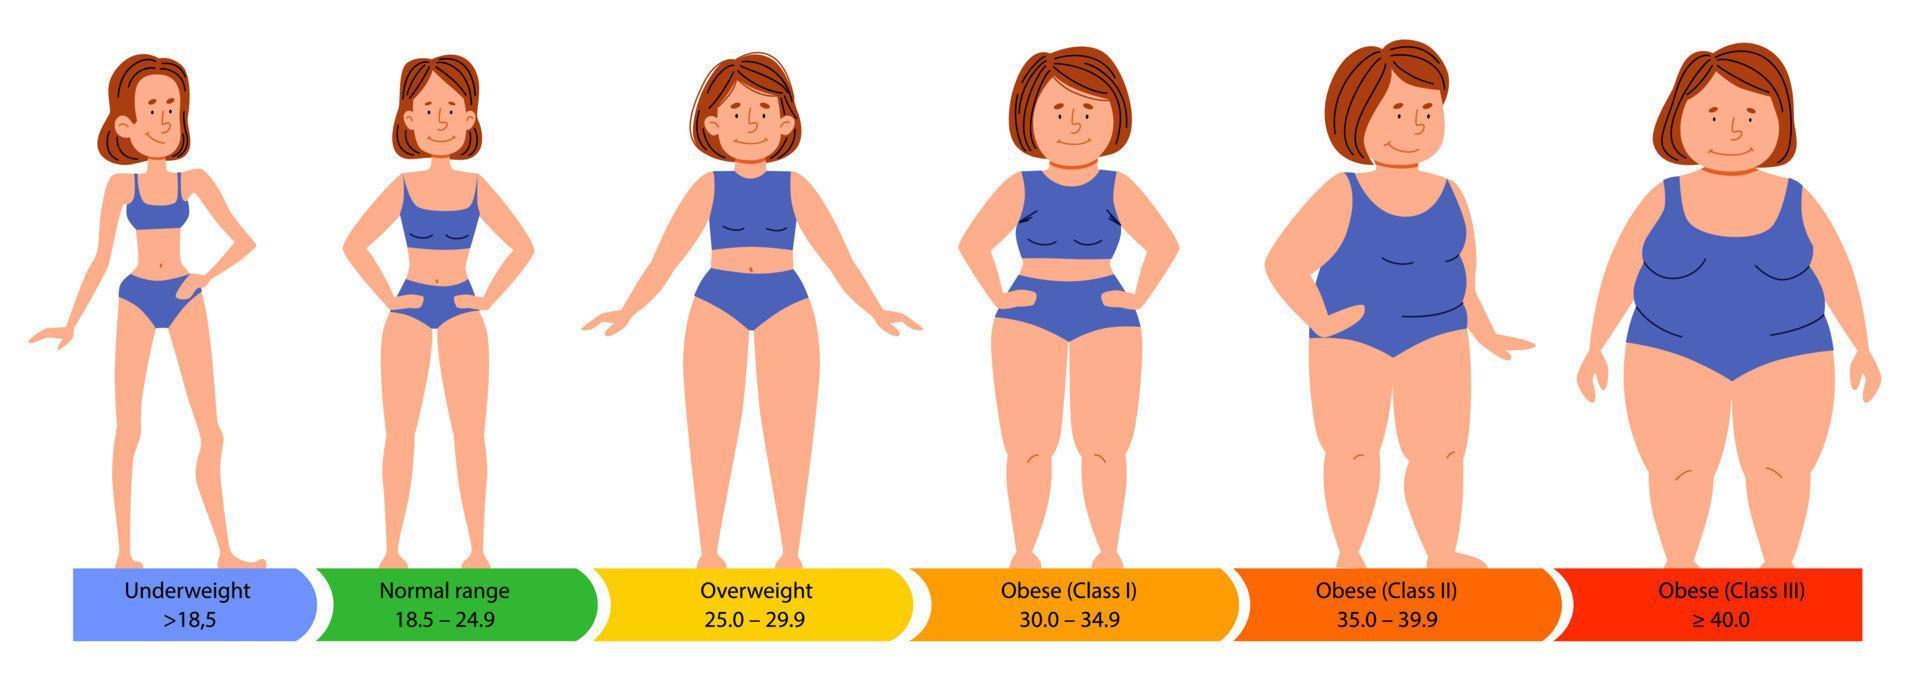 categorías con índice de masa corporal. siluetas femeninas de figura gruesa, normal y esbelta. vector